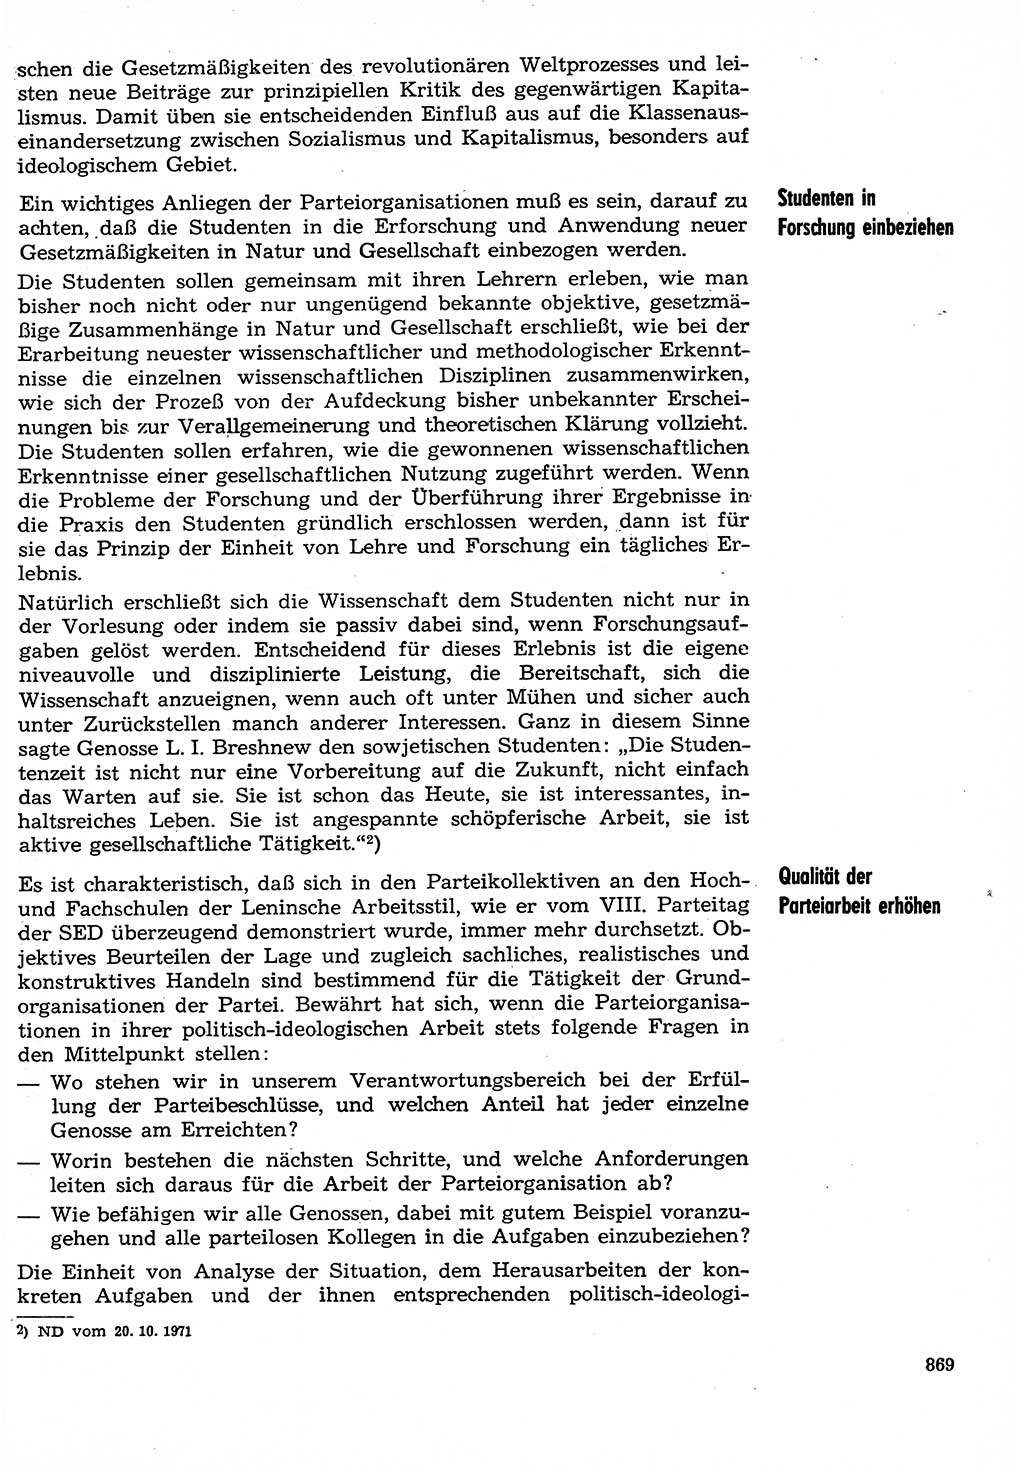 Neuer Weg (NW), Organ des Zentralkomitees (ZK) der SED (Sozialistische Einheitspartei Deutschlands) für Fragen des Parteilebens, 29. Jahrgang [Deutsche Demokratische Republik (DDR)] 1974, Seite 869 (NW ZK SED DDR 1974, S. 869)